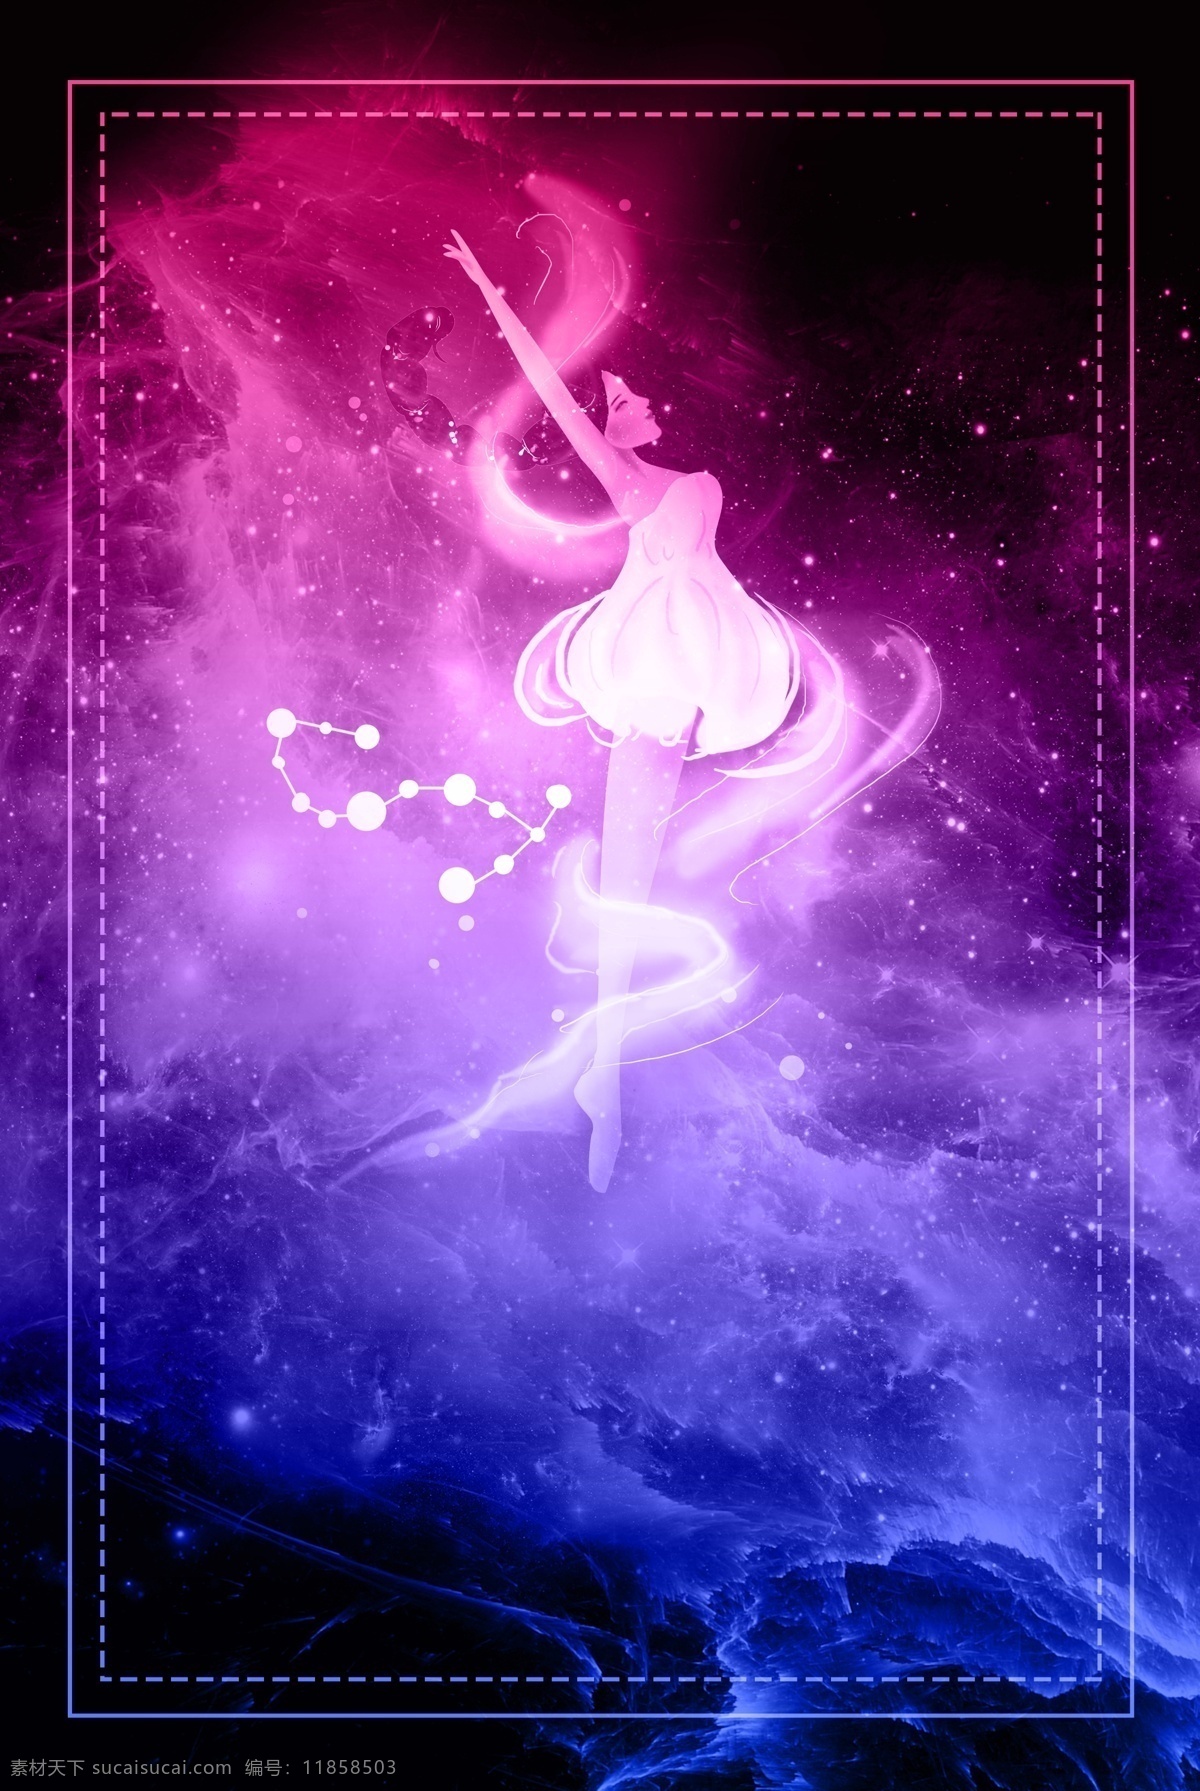 星空 天蝎座 背景 海报 女孩 女生 插图 插画 星座 星星 星系 玄幻 蓝色 12星座